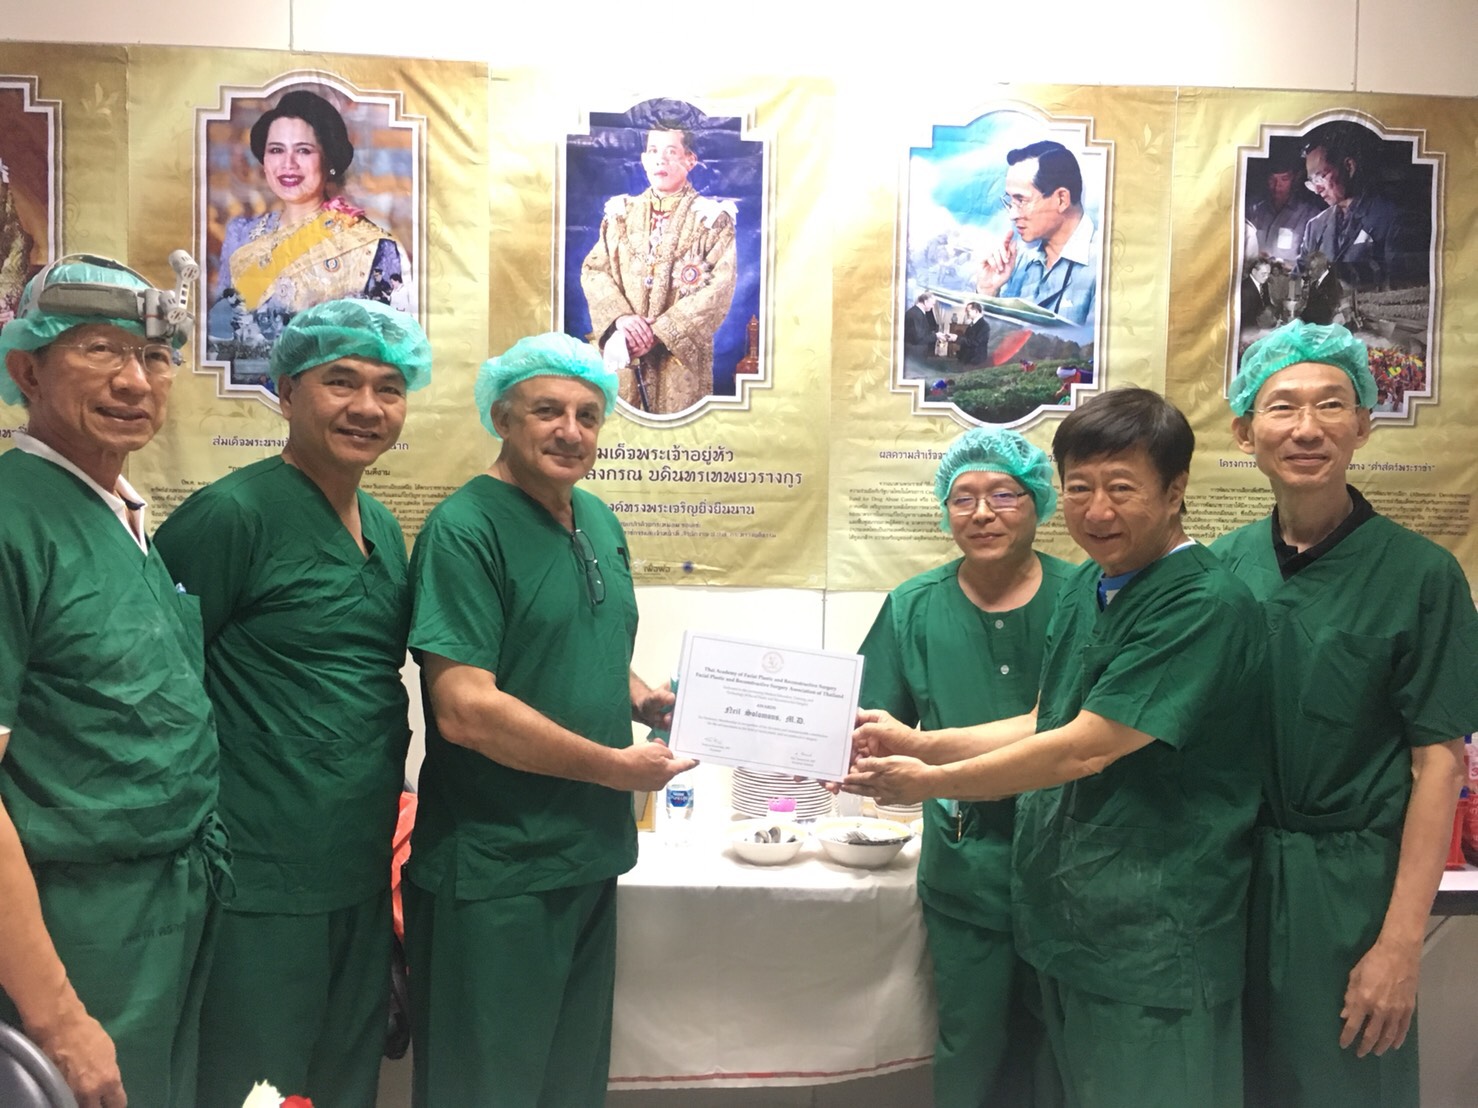 คณะศัลยแพทย์ตกแต่งใบหน้าไทย และธีรพรคลินิก ได้มอบประกาศนียบัตรให้ "Dr. Neil Solomons" ศัลยแพทย์ชื่อดังจากอเมริกา 1